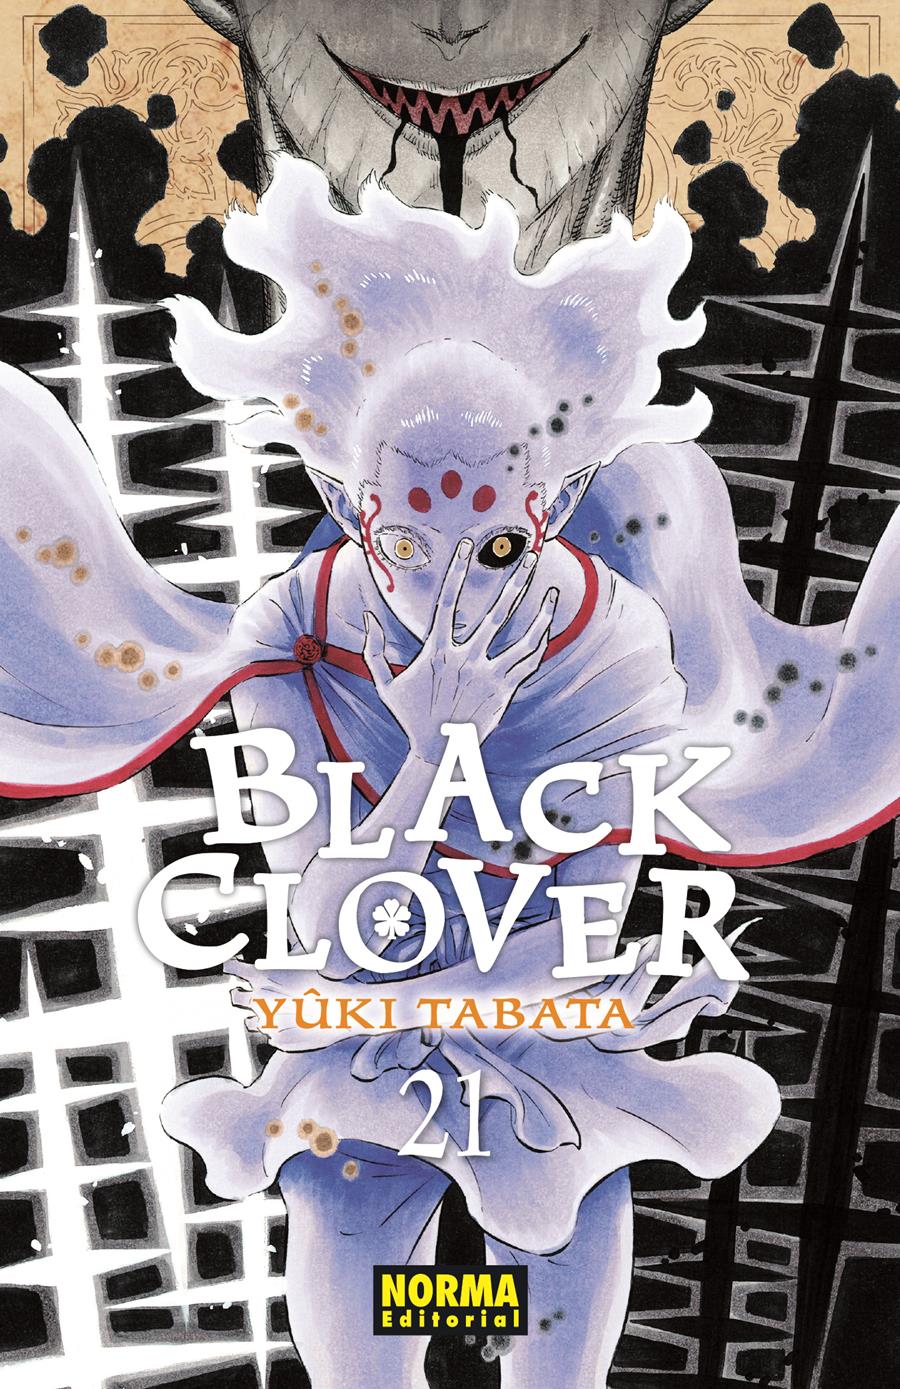 Black clover 21 | N0921-NOR29 | Yûki Tabata | Terra de Còmic - Tu tienda de cómics online especializada en cómics, manga y merchandising